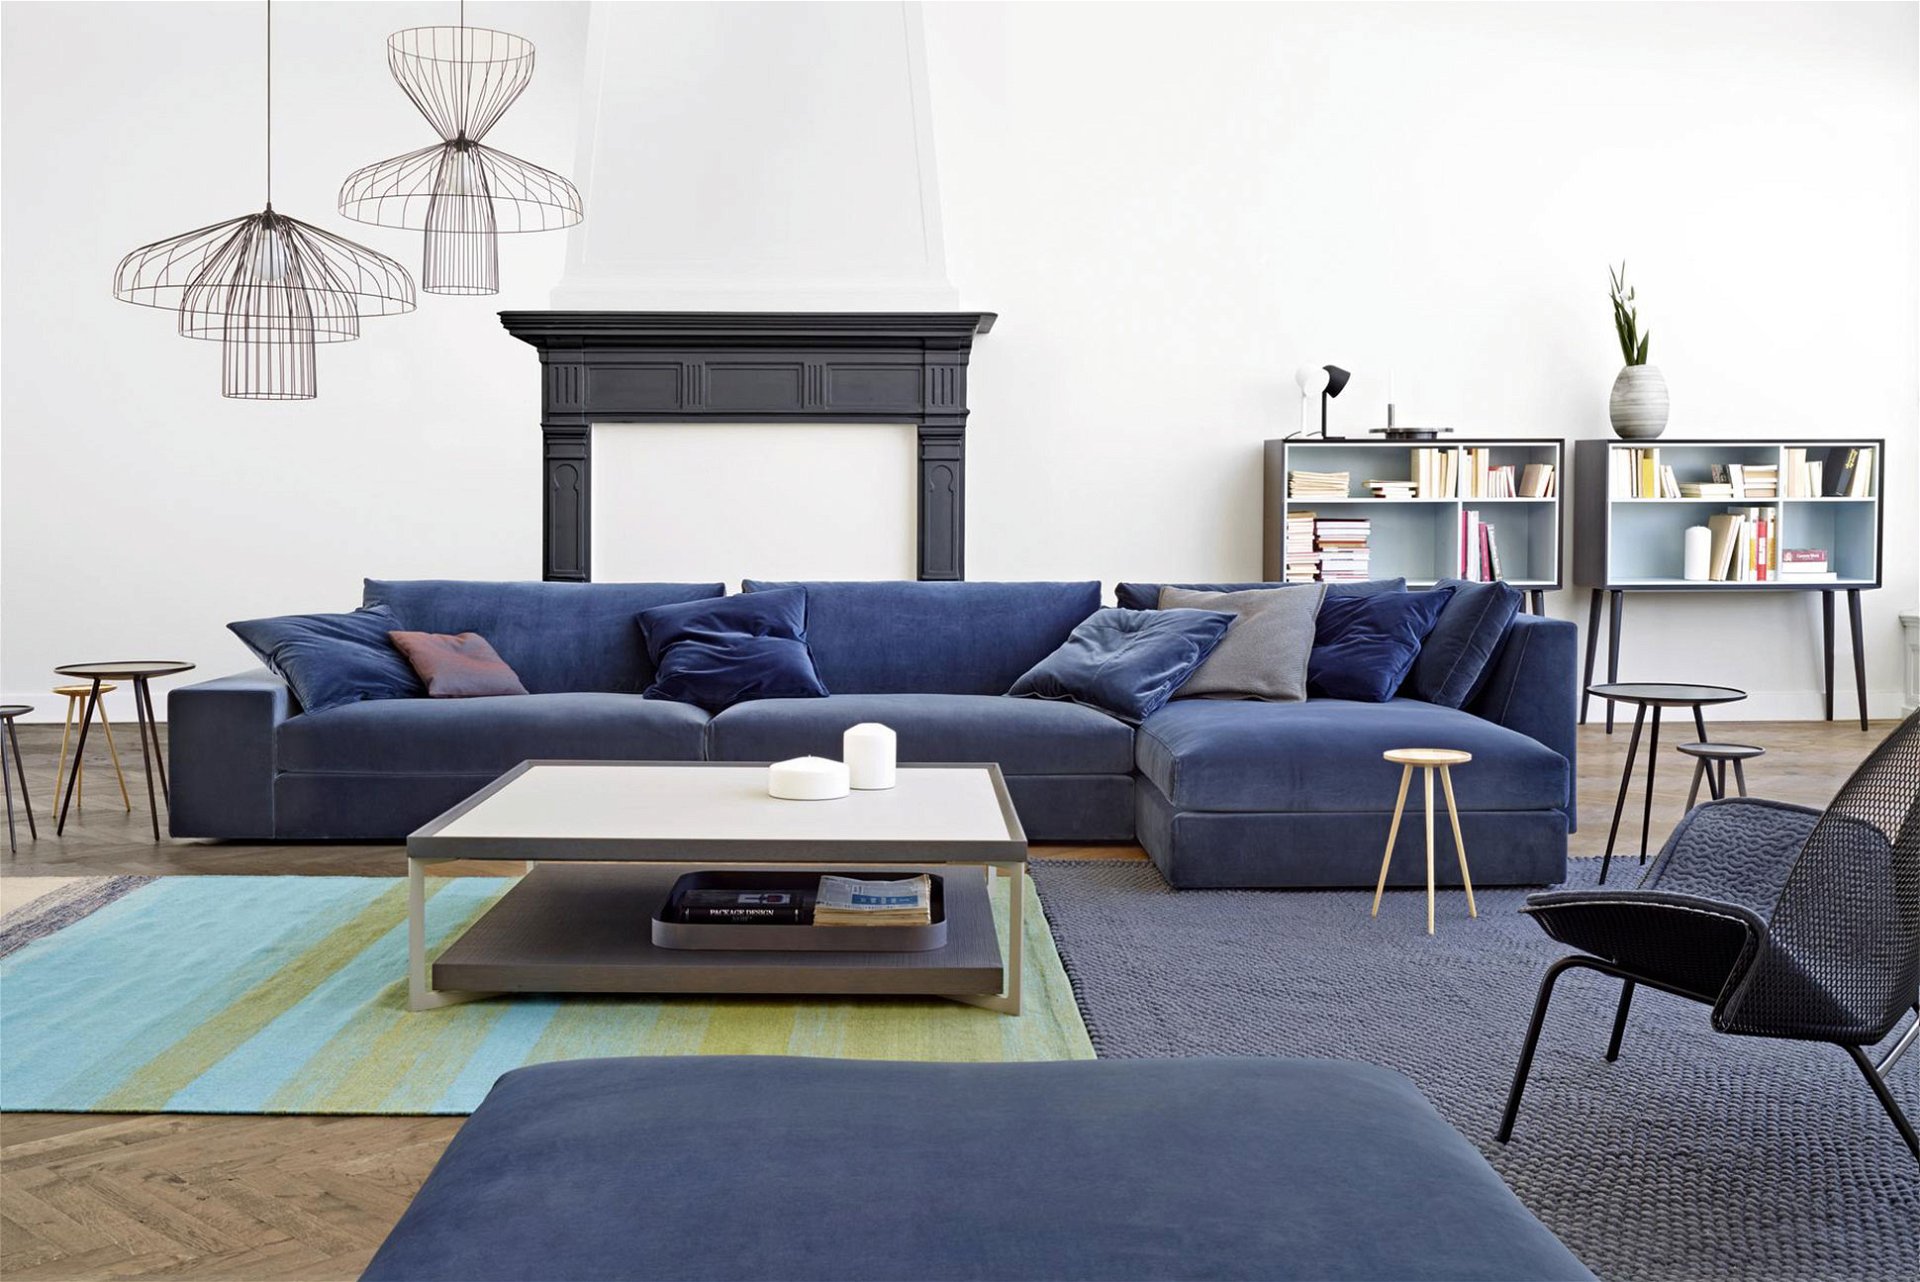 Kuschelig: Das Sofa ist ein Entwurf von Didier Gomez für ligne roset, der seine Handschrift trägt. Klar, elegant und zeitlos mit klassischer Formgebung.